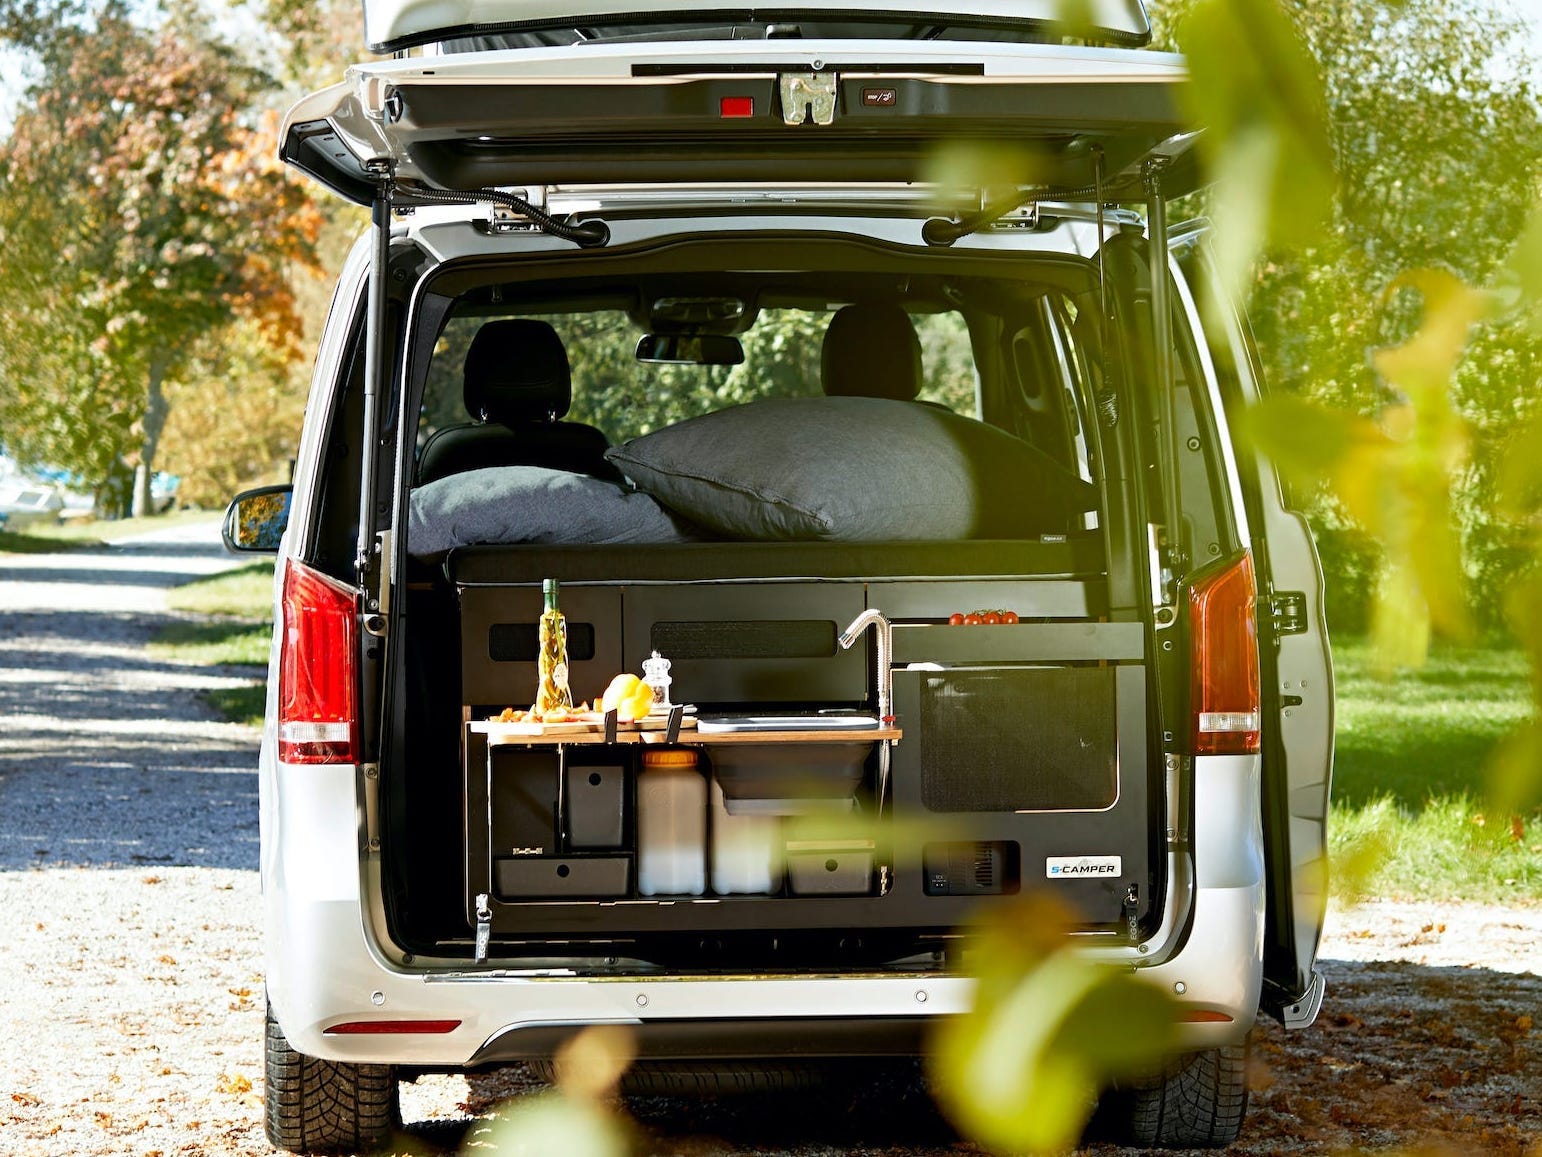 Der offene Kofferraum des EQV gibt den Blick auf eine Miniküche frei.  Der Van ist zwischen Bäumen geparkt.